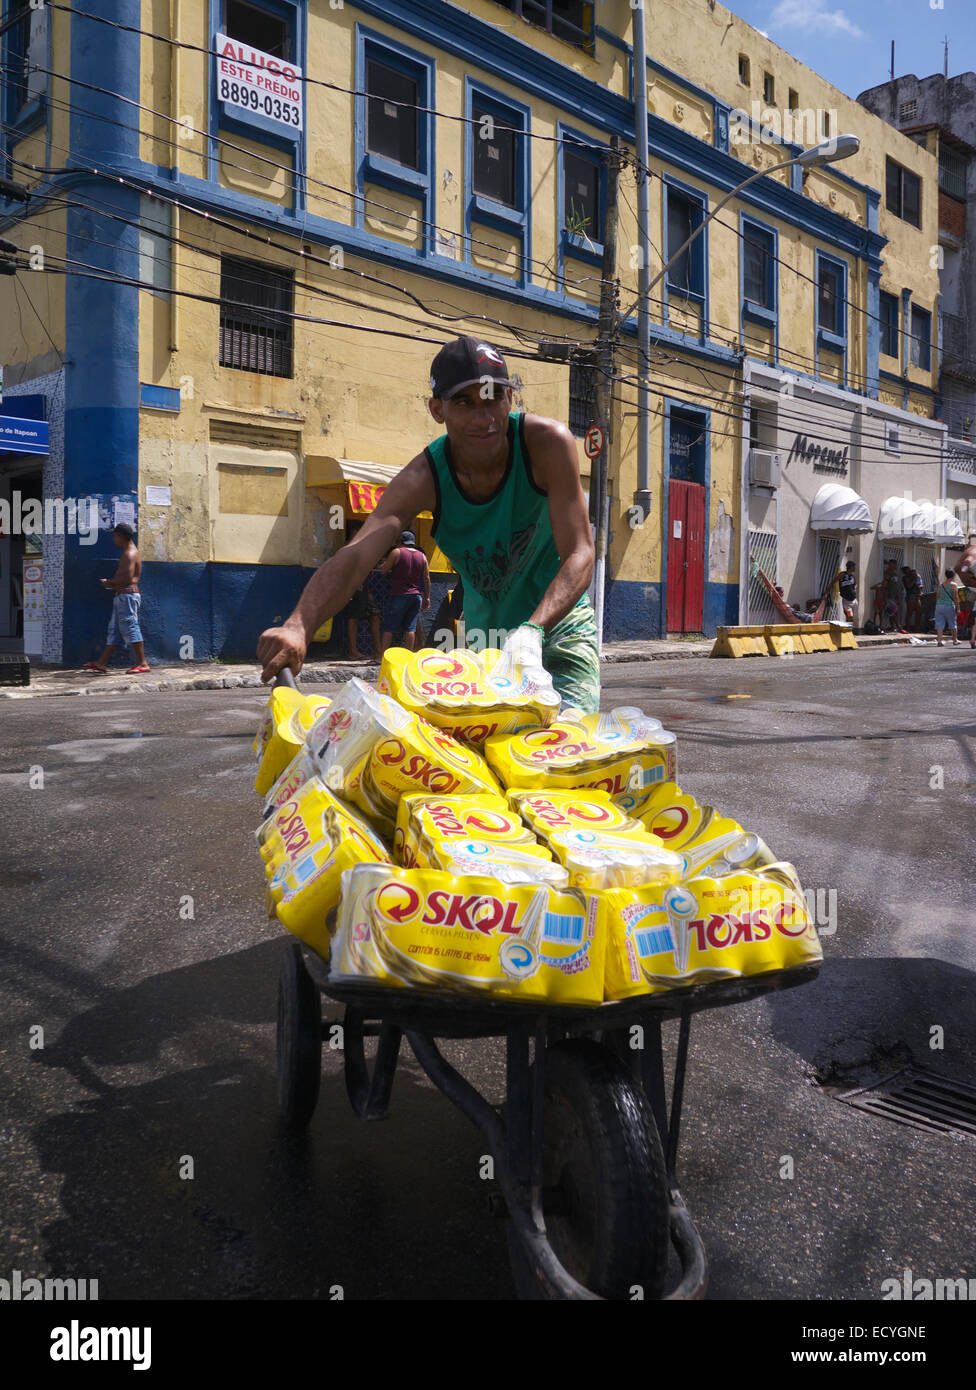 salvador-brasil-febrero-9-2013-el-proveedor-transporta-la-carretilla-de-mano-lleno-de-cerveza-de-la-marca-skol-hacia-celebraciones-de-carnaval-en-barra-ecygne.jpg